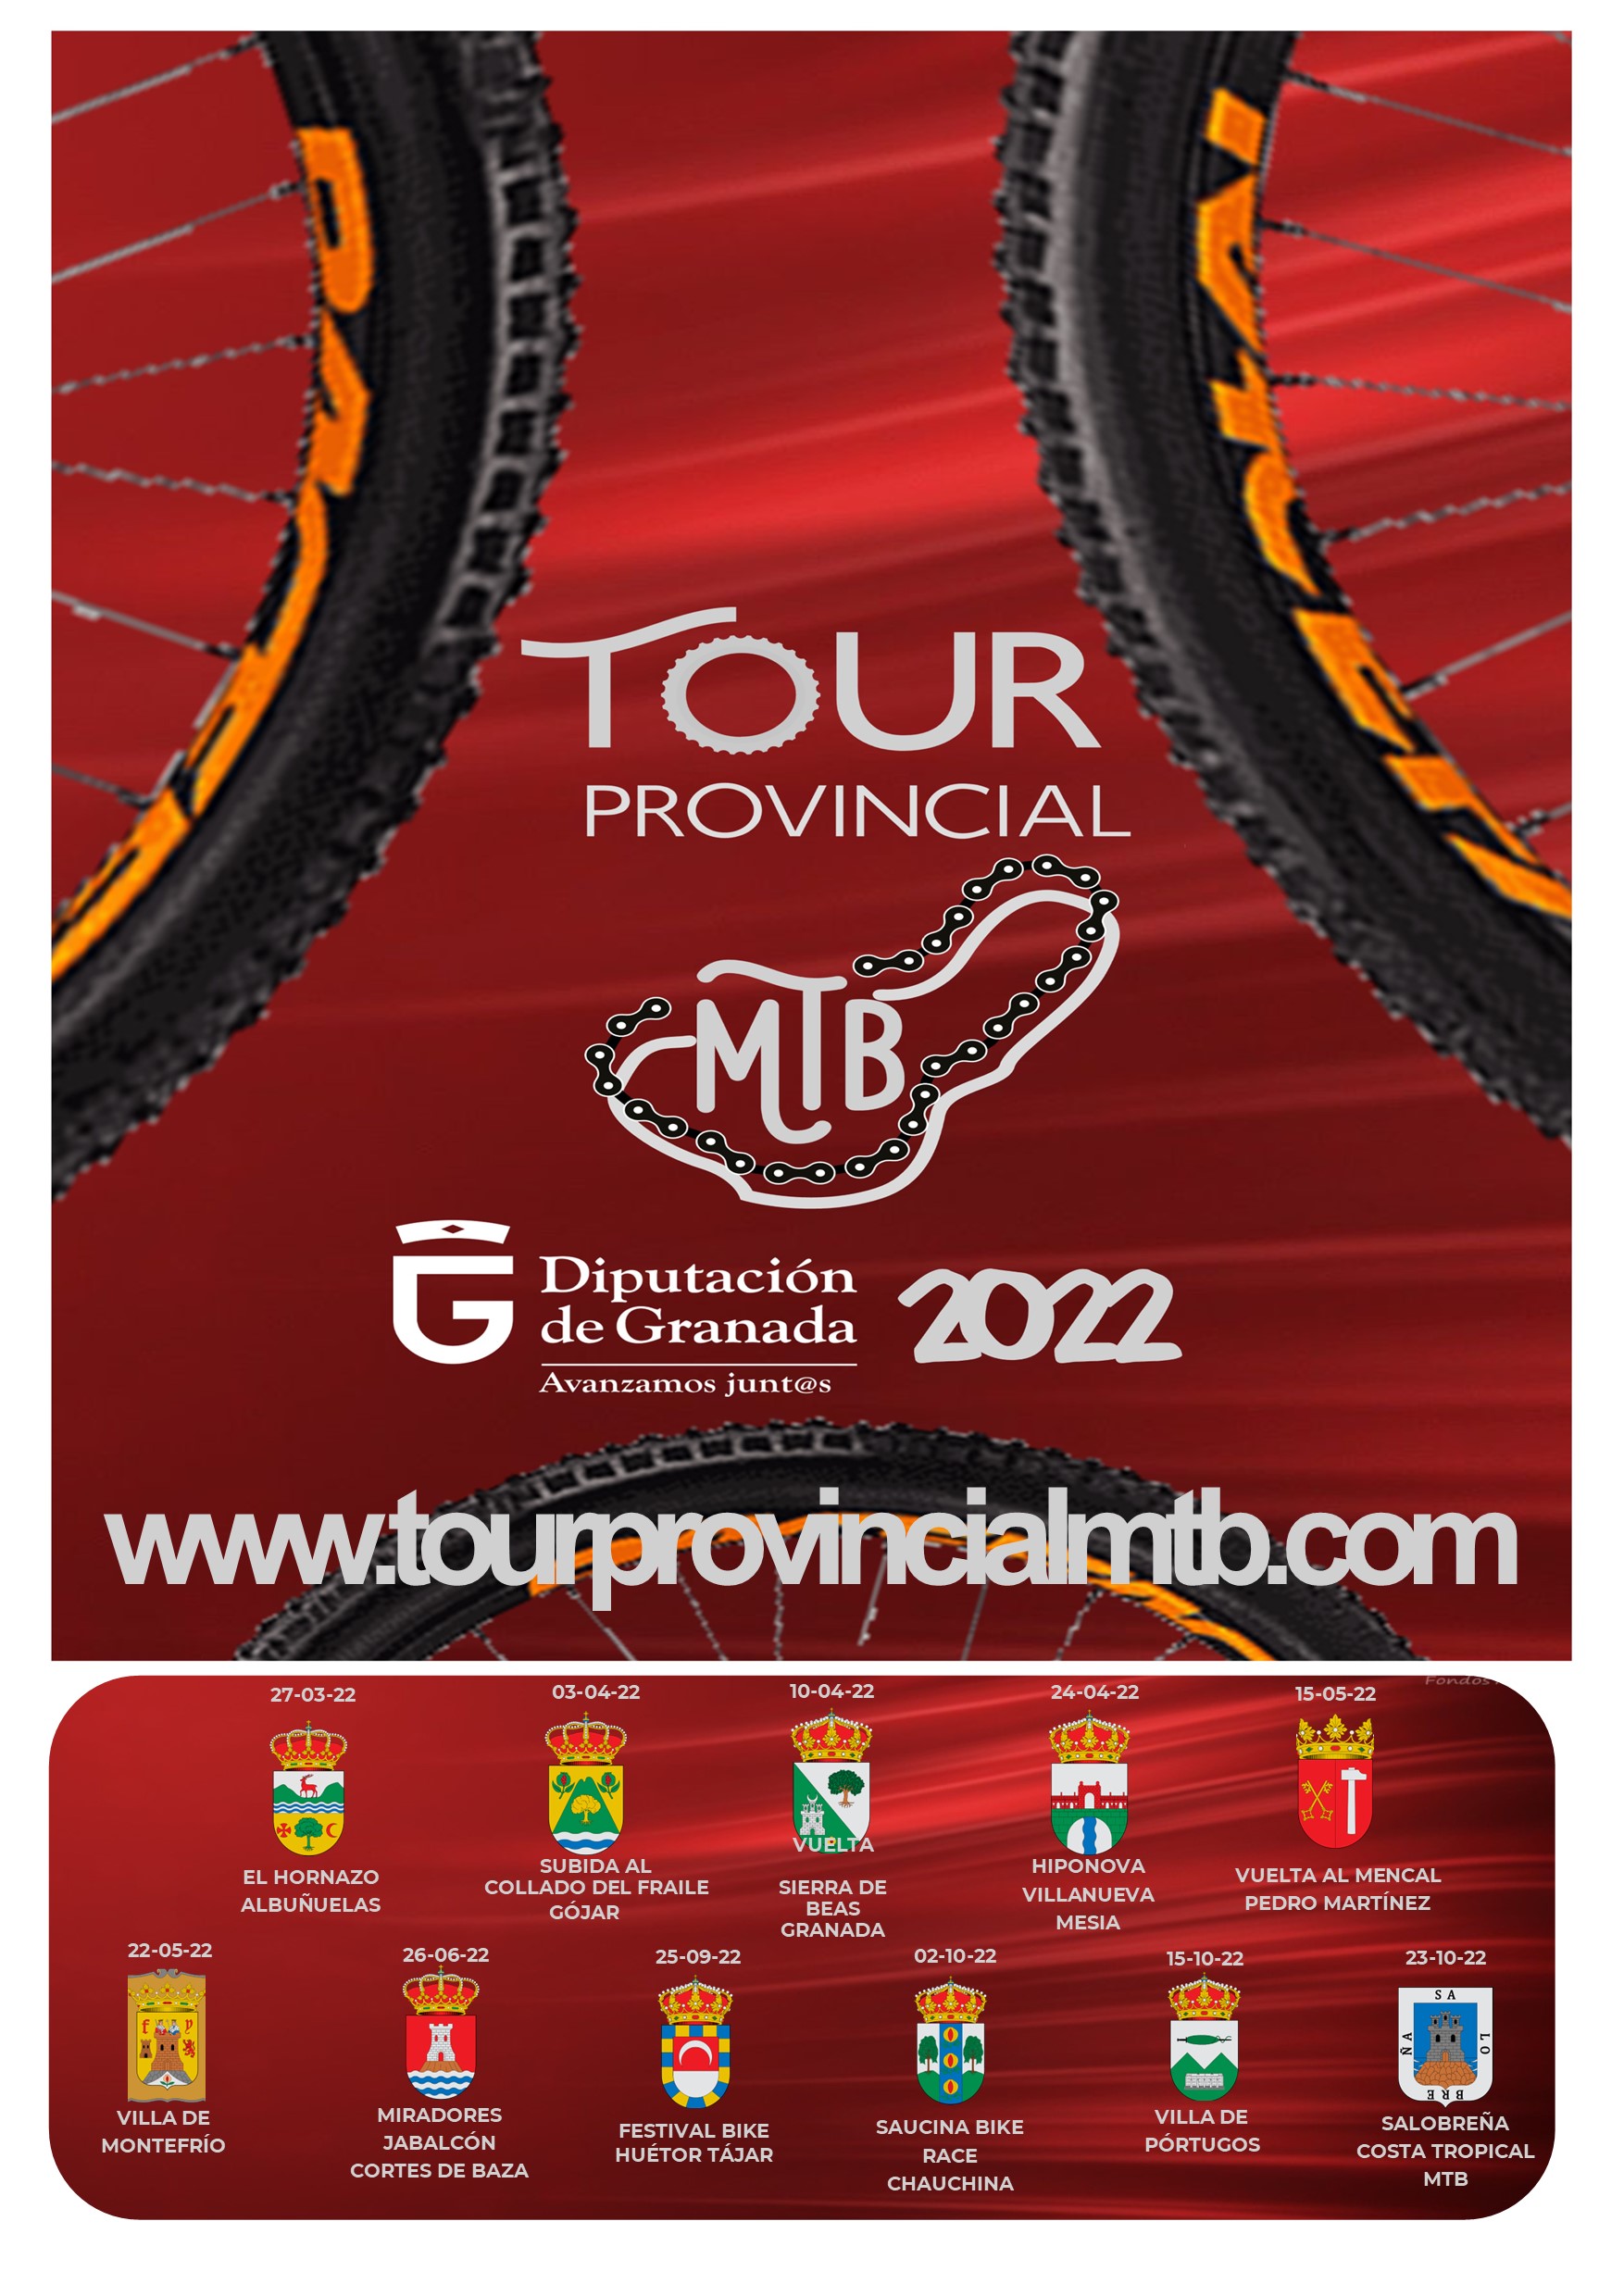 TOUR PROVINCIAL MTB 2022 - SALOBREÑA COSTRA TROPICAL MTB